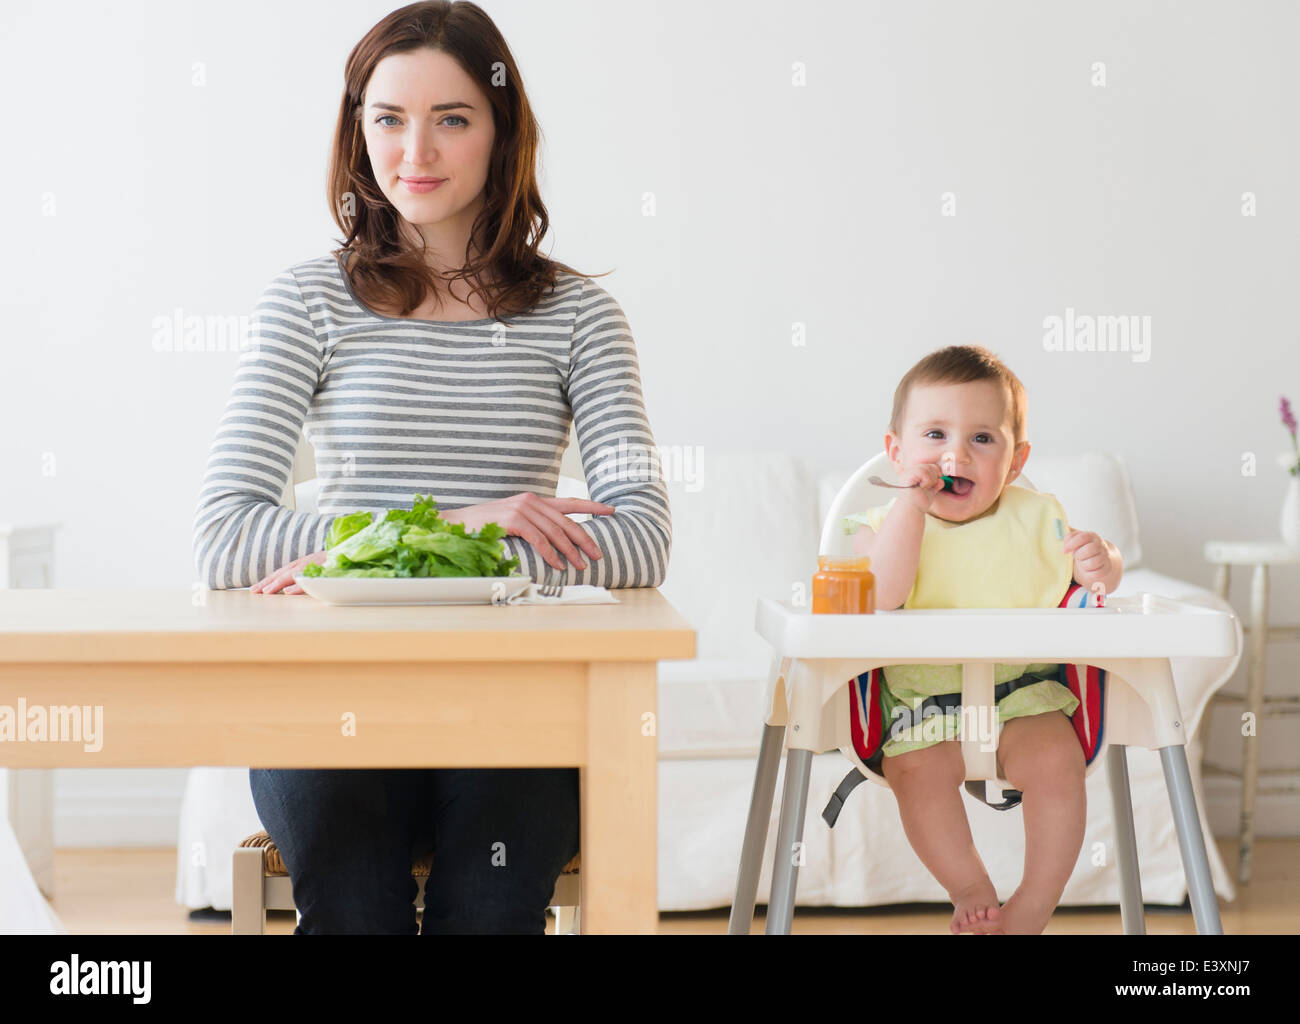 La madre e il bambino mangiare insieme Foto Stock